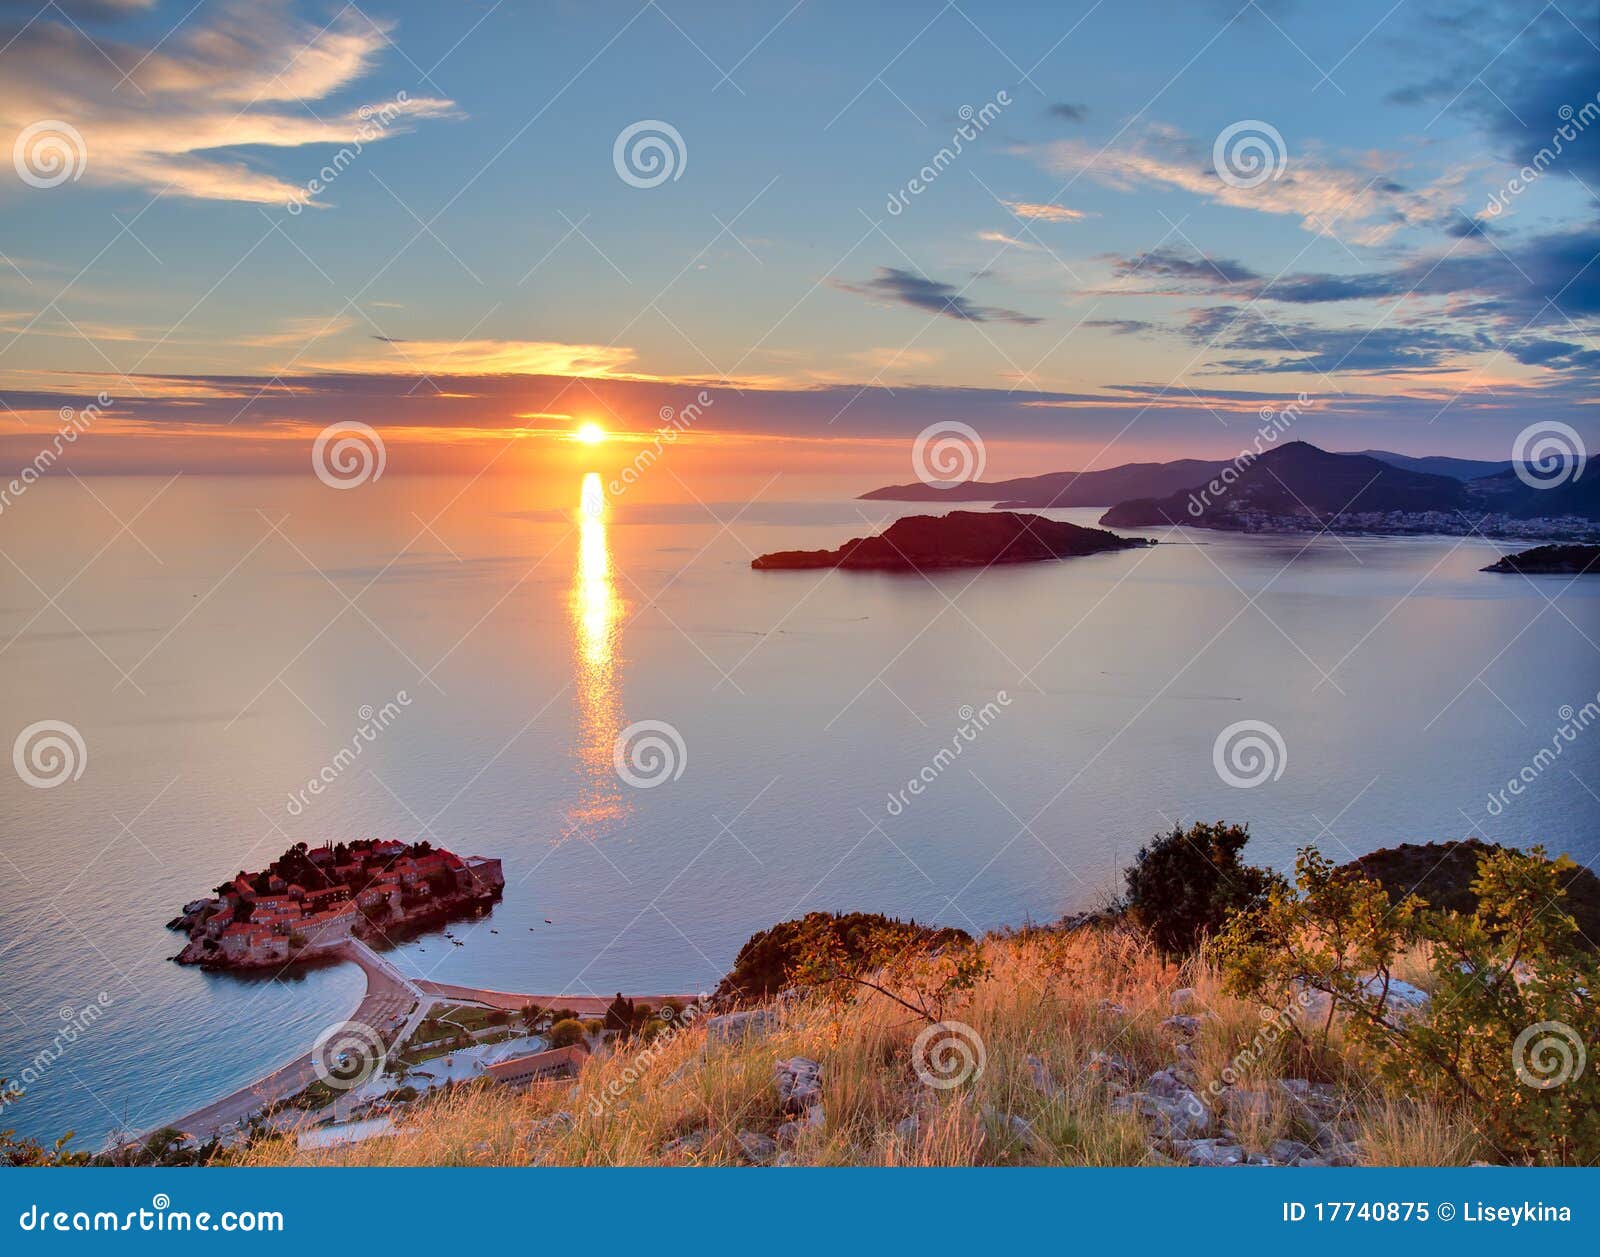 sunset over sveti-stefan in montenegro